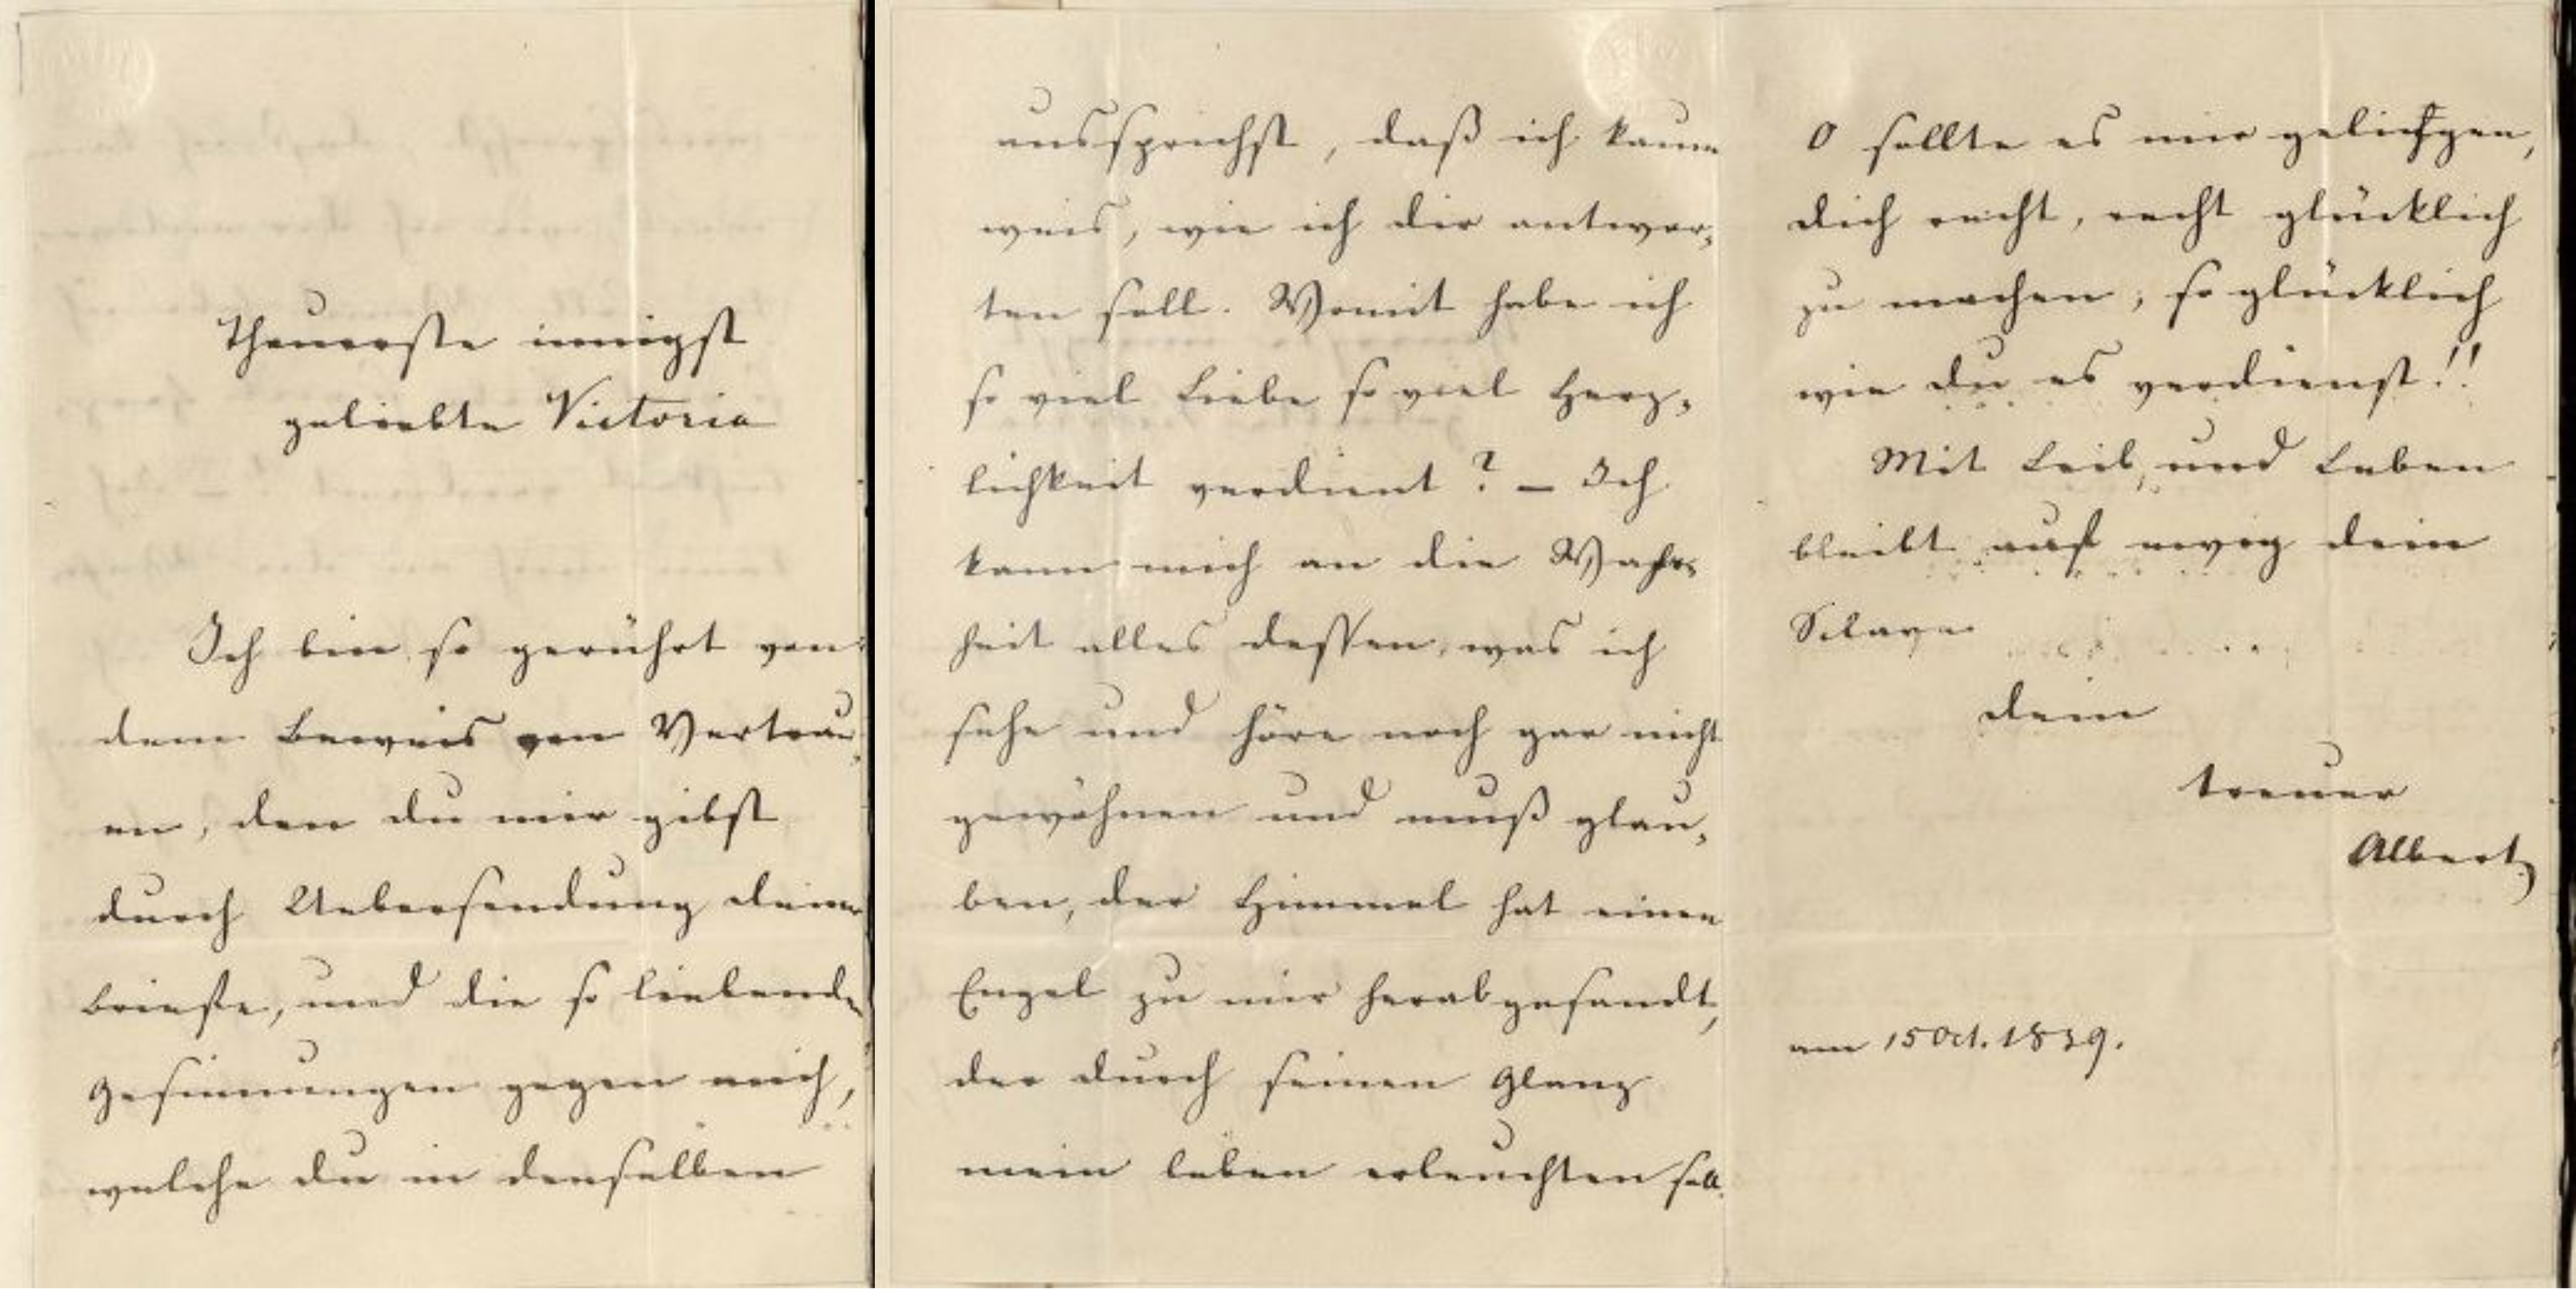 The letters between Queen Victoria and Prince Albert - Queen